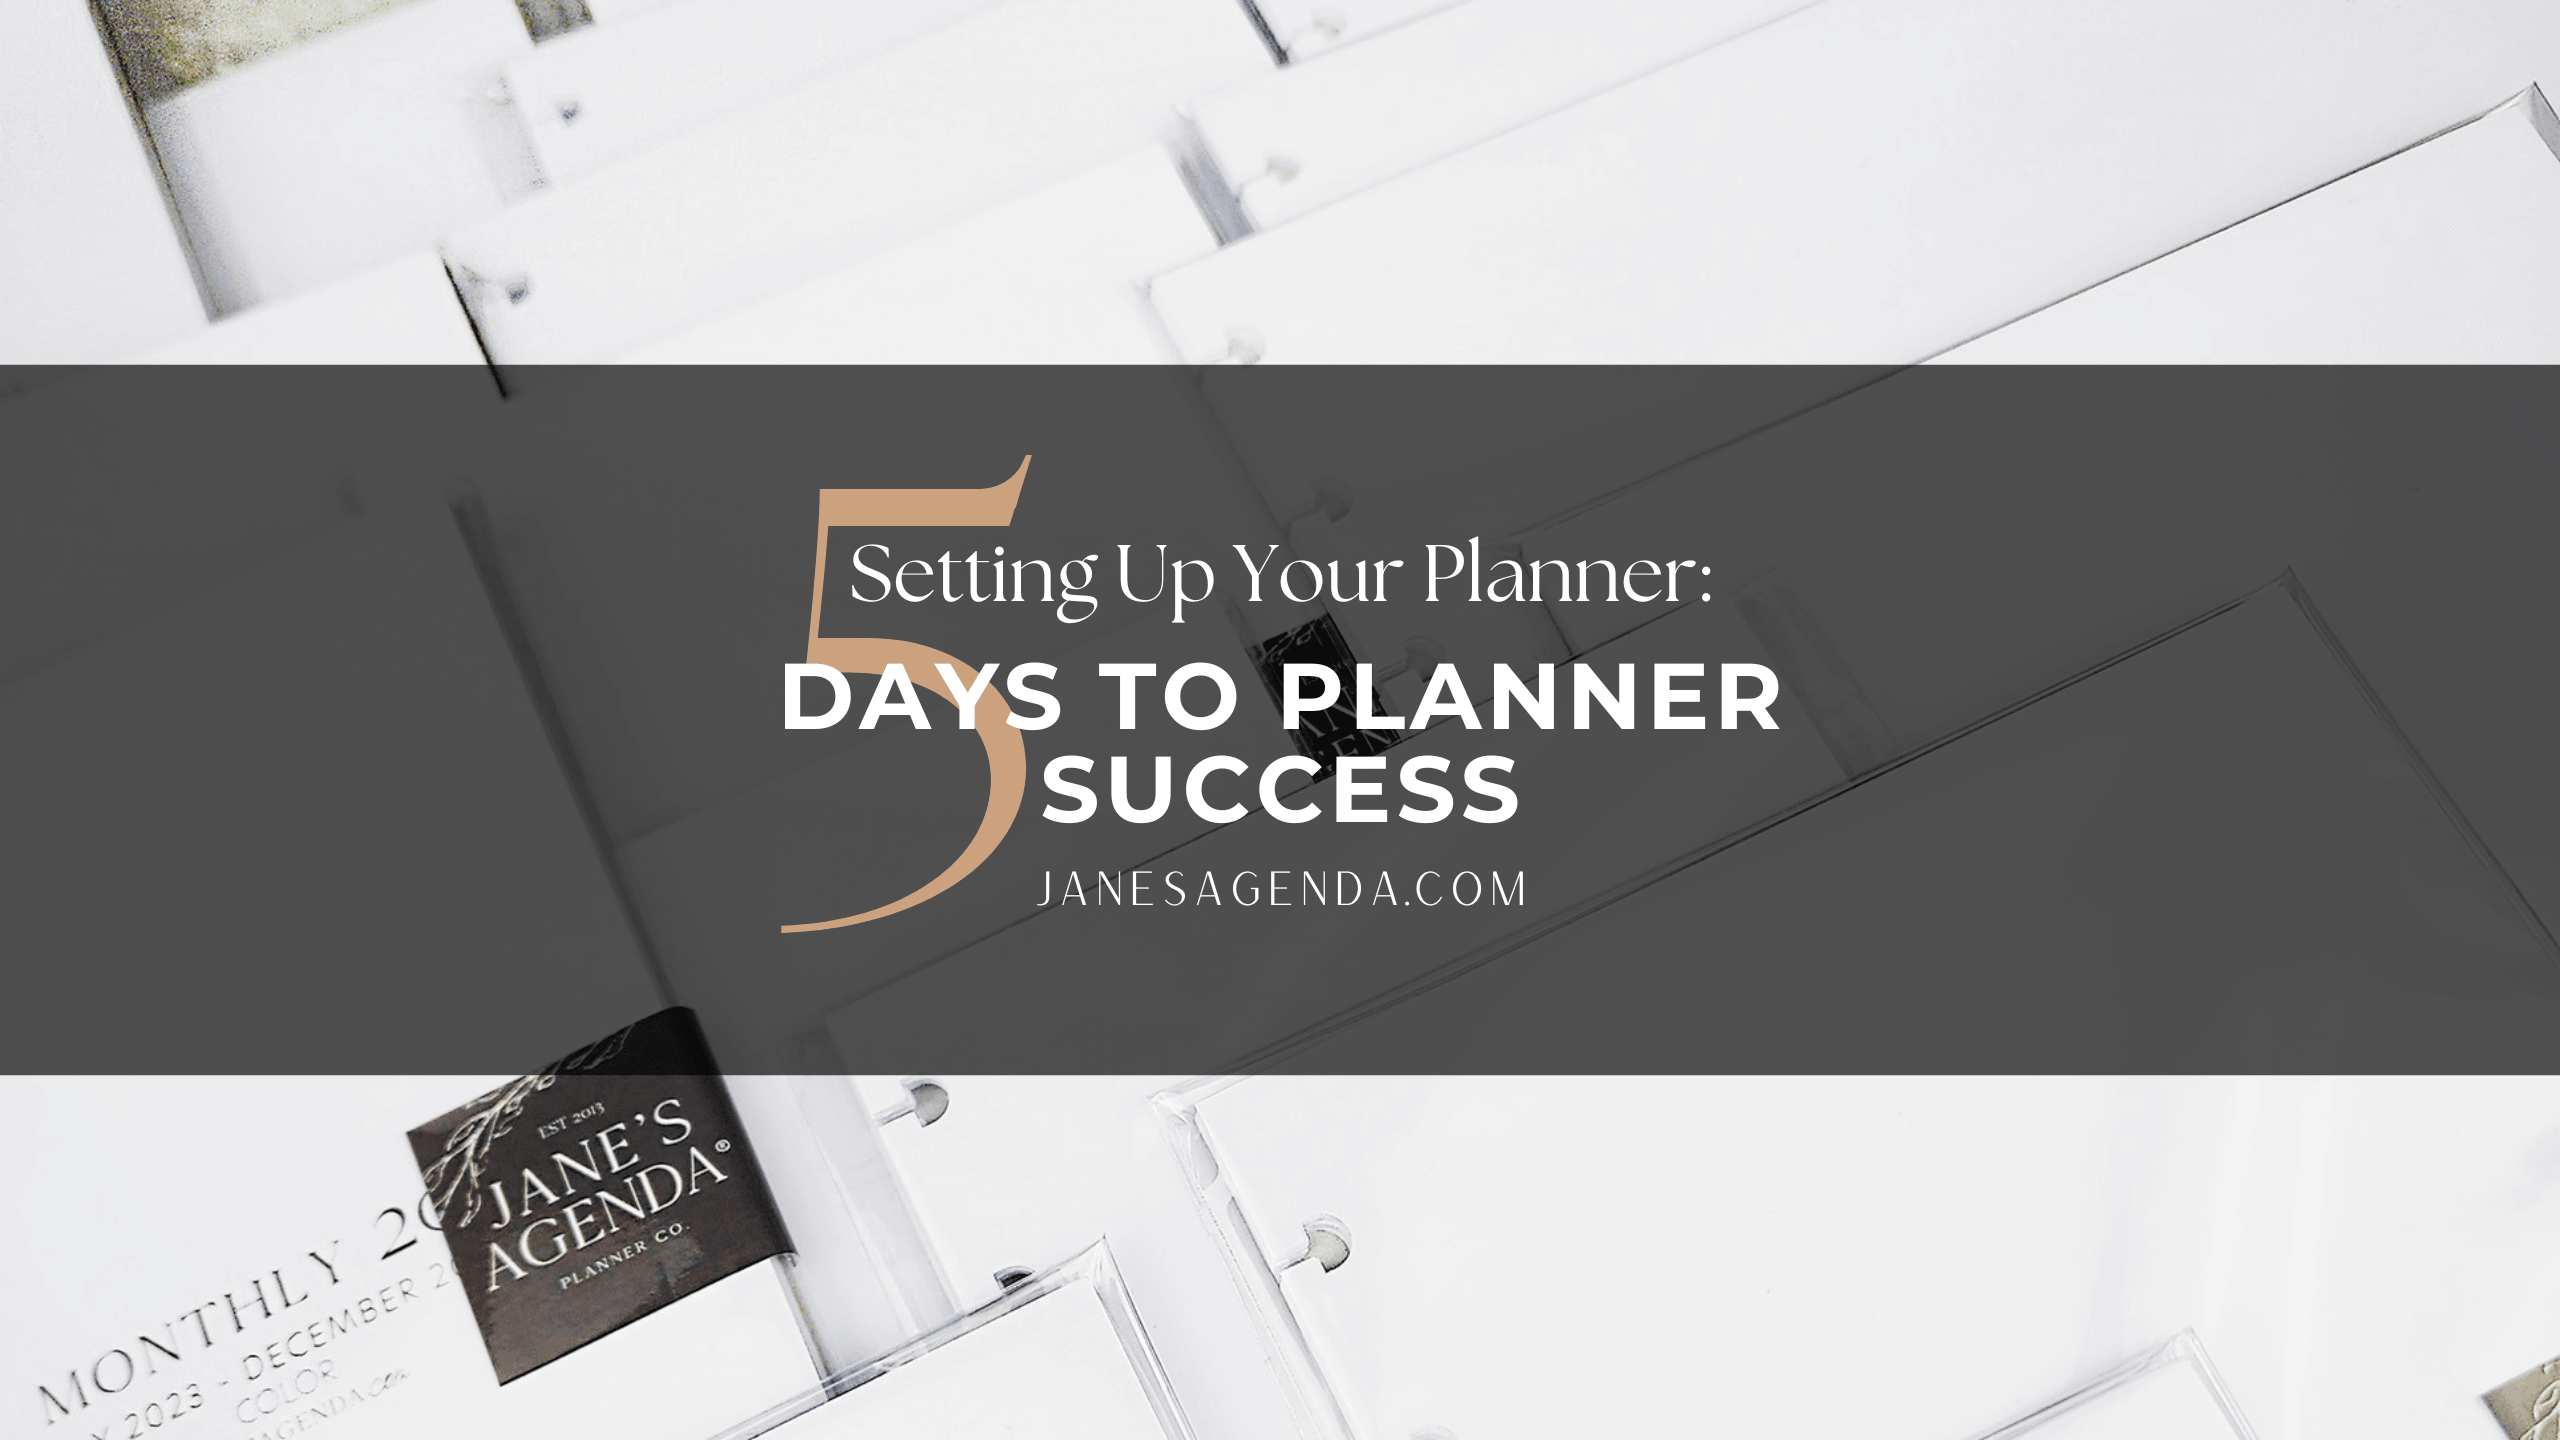 Jane's Agenda 5 days to planner success